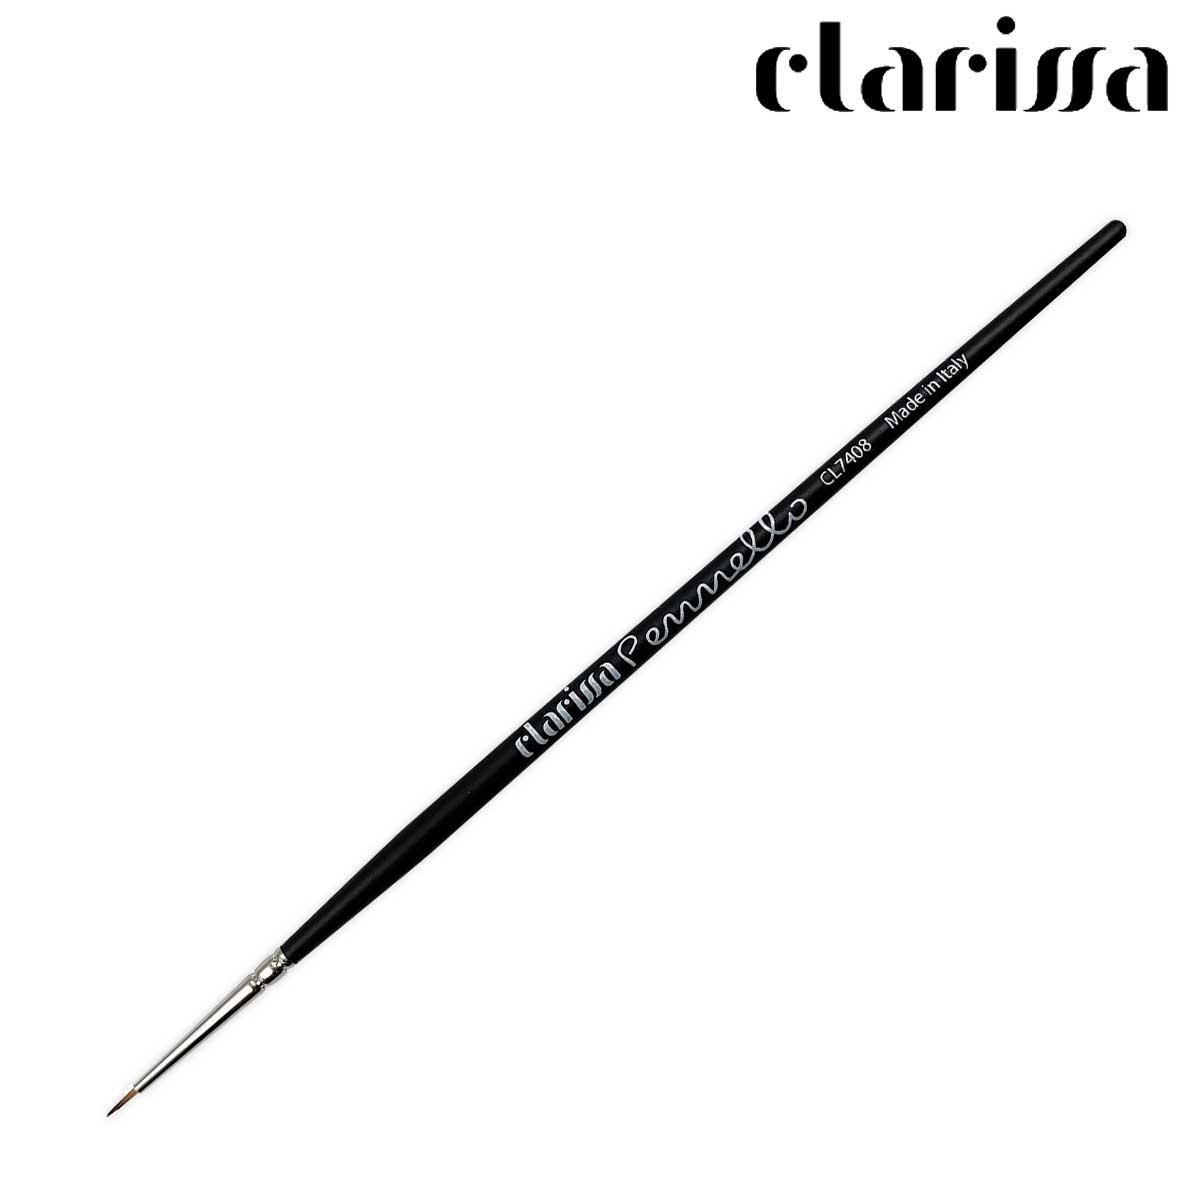 Clarissa Clarissa pennello artista n.1 - 5mm CL7408 8033524895397